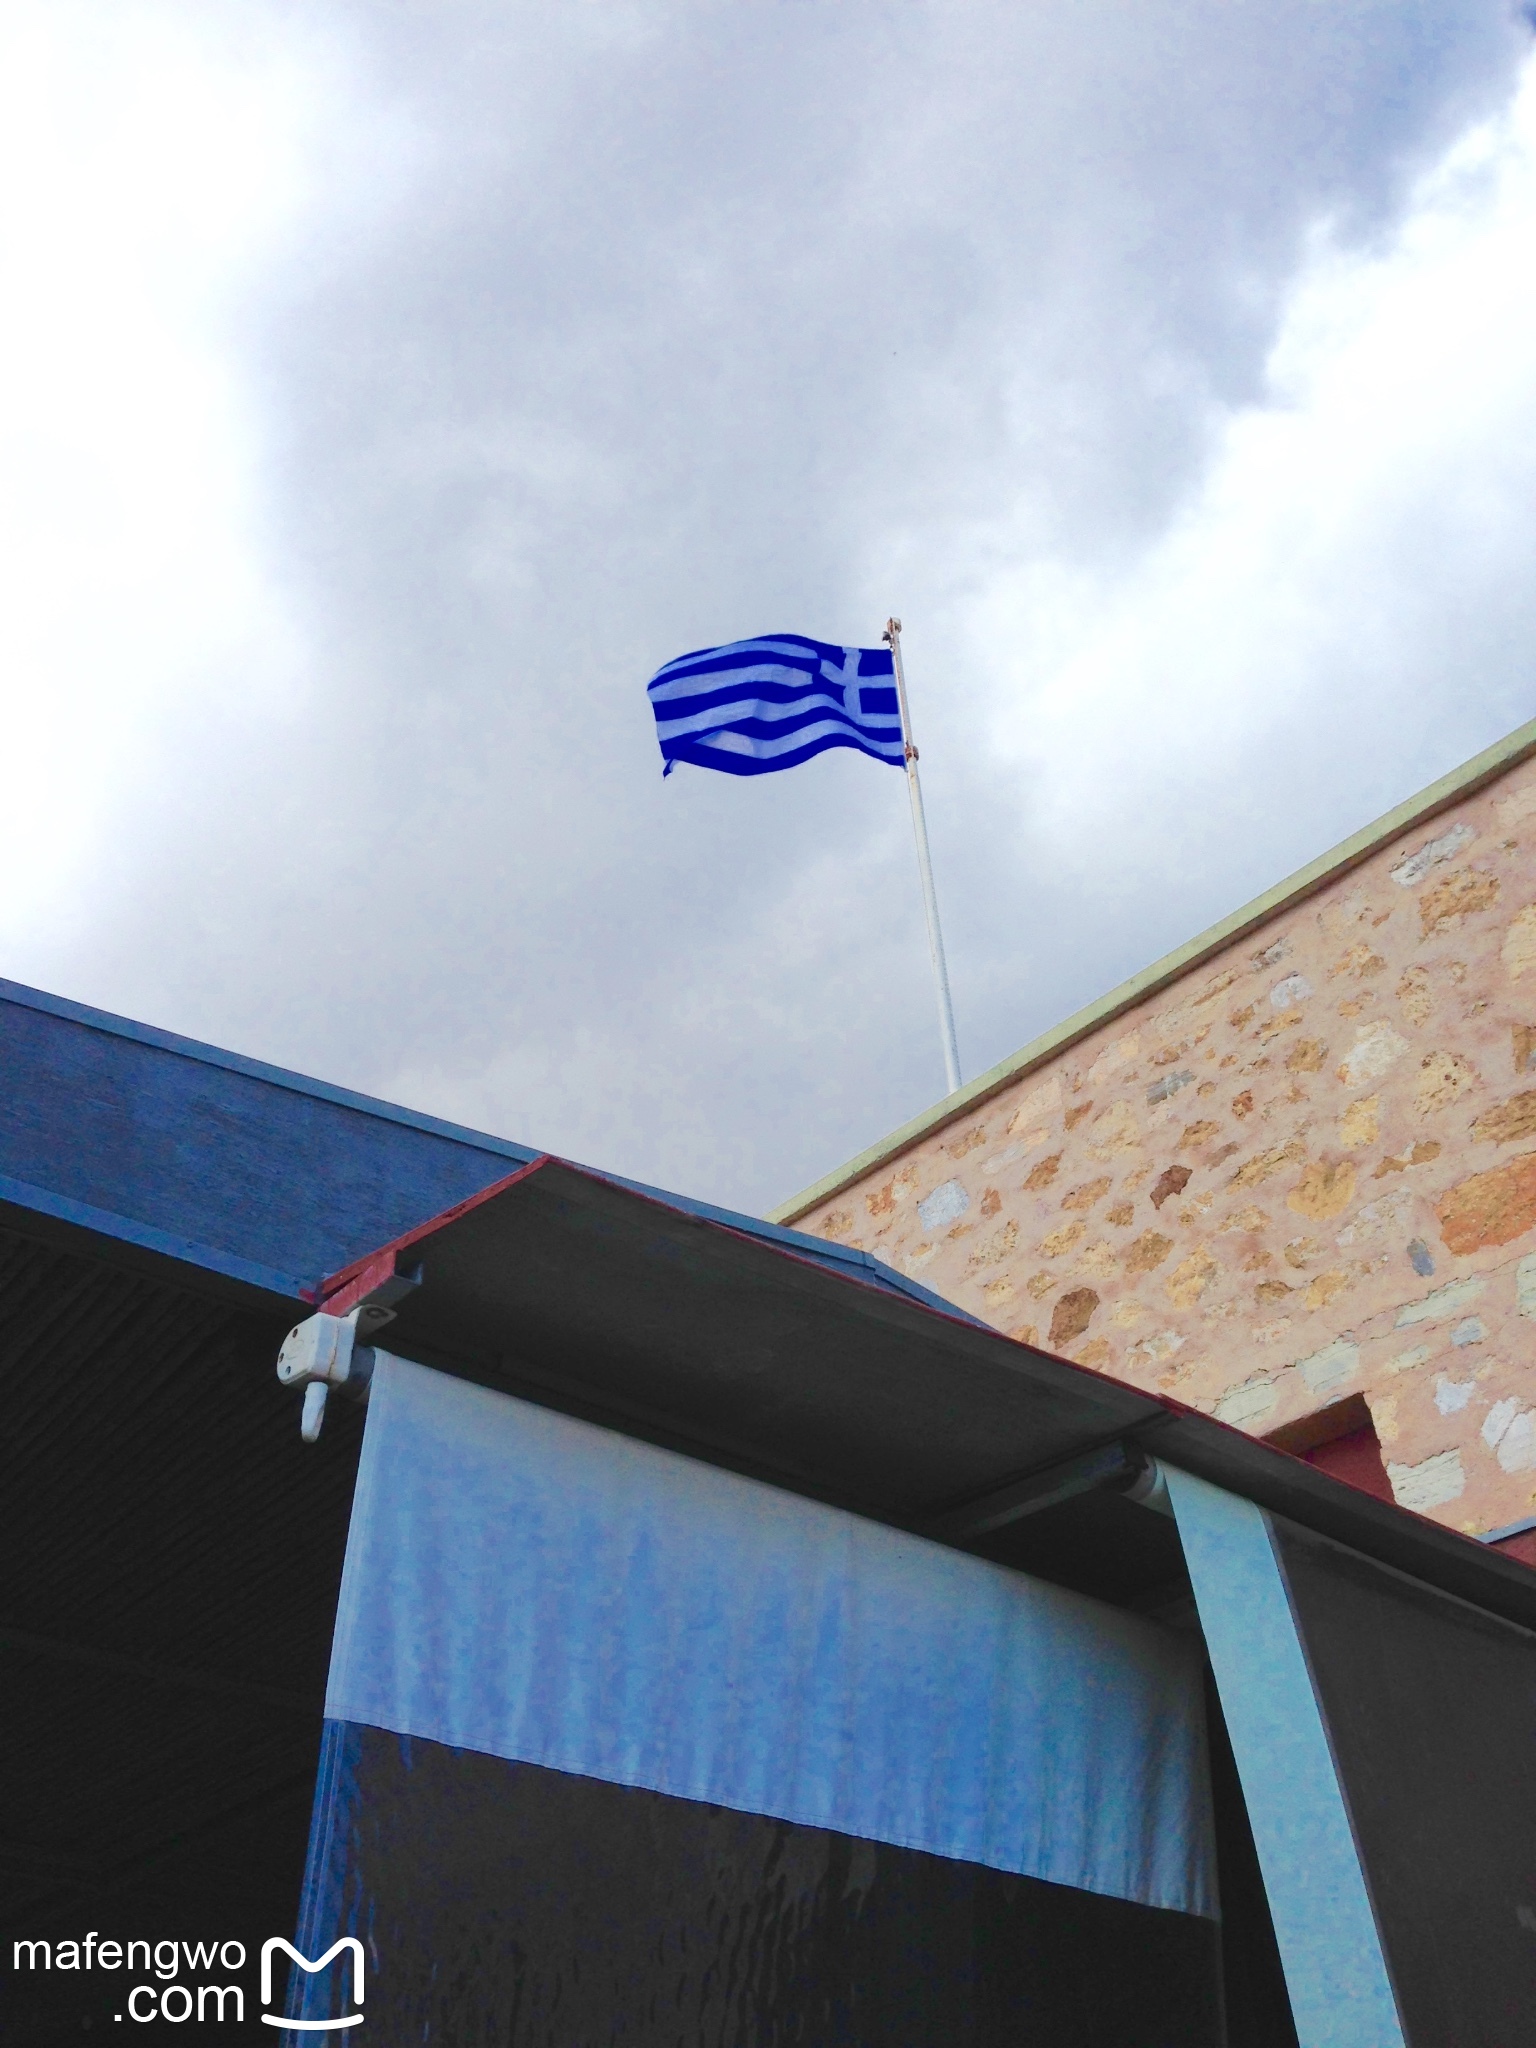 希腊的国旗,也是蓝白蓝白的